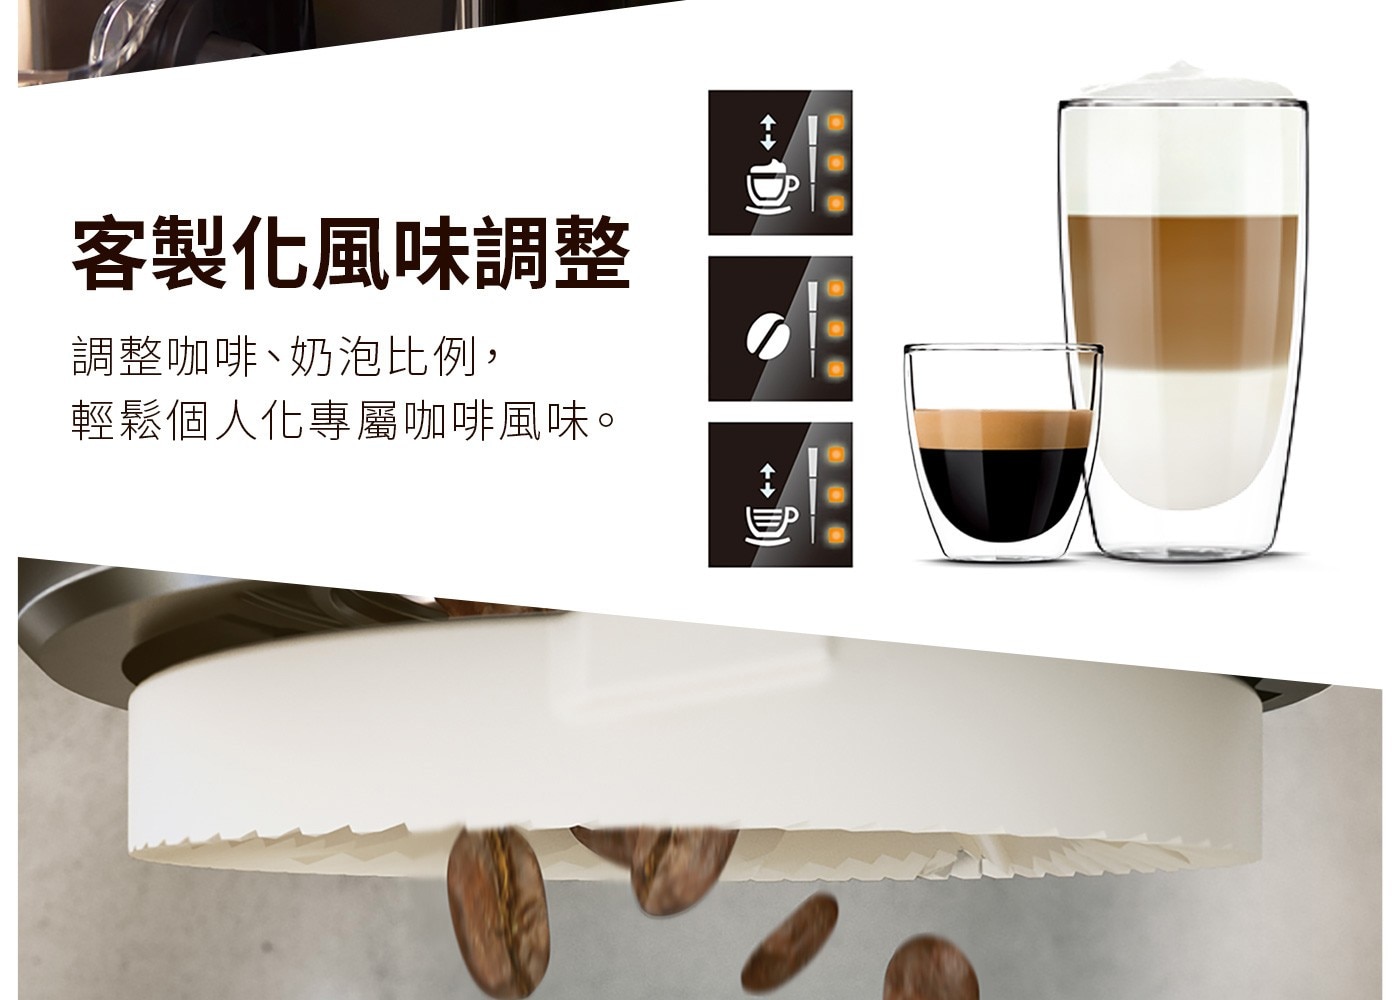 飛利浦全自動義式咖啡機EP2231，一鍵享用香濃卡布奇諾/義式咖啡，創新LatteGo奶泡系統，無管線設計，15秒快速清潔。LatteGo 採用漩渦式奶泡技術，以每秒 394 公尺的速度釋放強勁的蒸汽微泡，製造濃厚而綿密的奶泡。彈指之間即可享用3種咖啡，義式濃縮、美式咖啡或以牛奶為底的特調飲品。